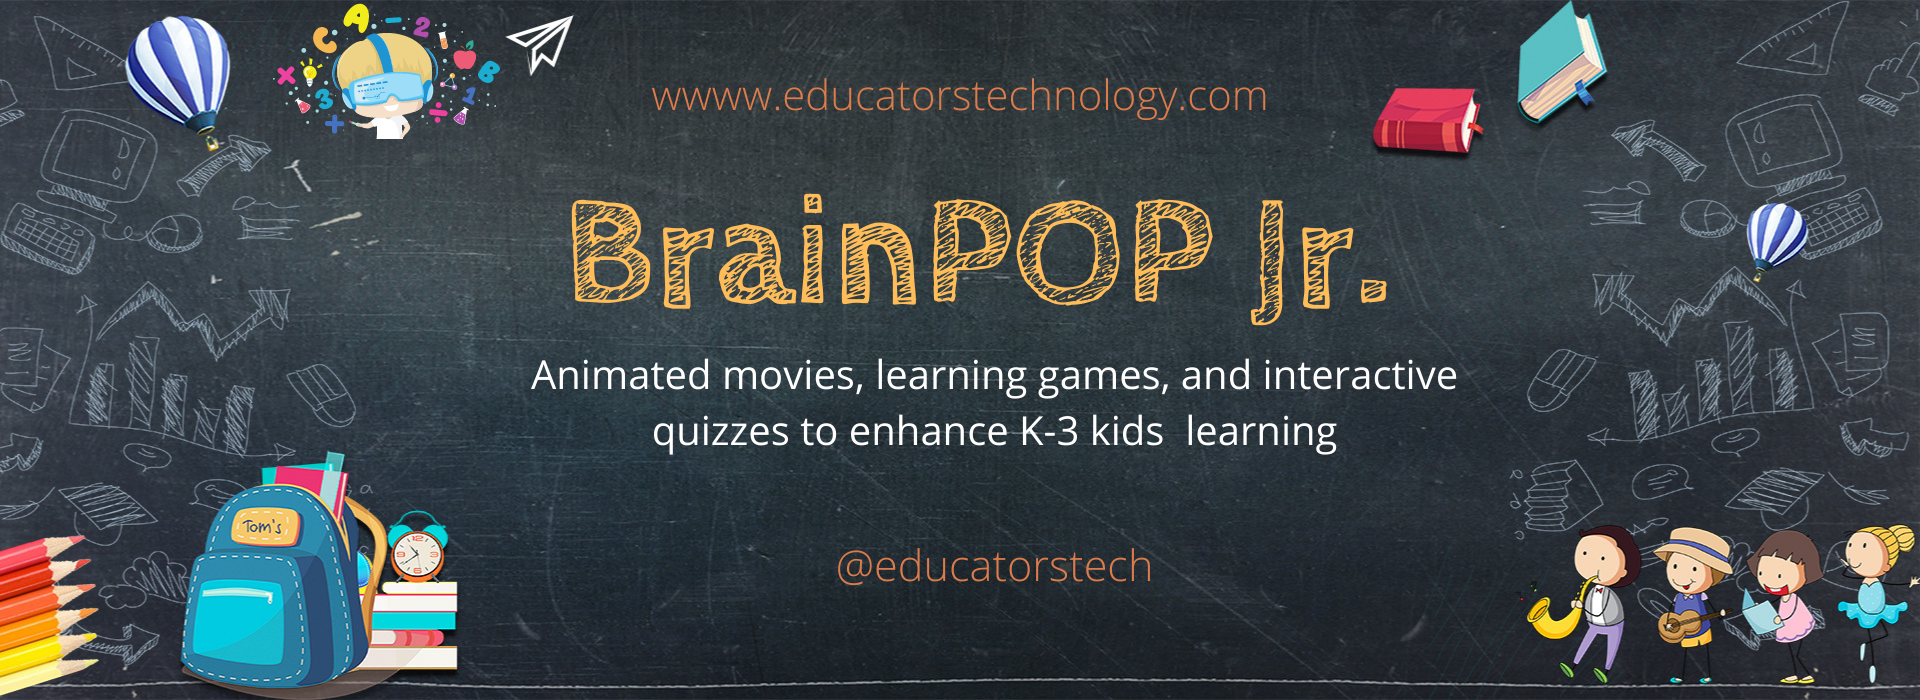 BrainPOP Jr. review for teachers